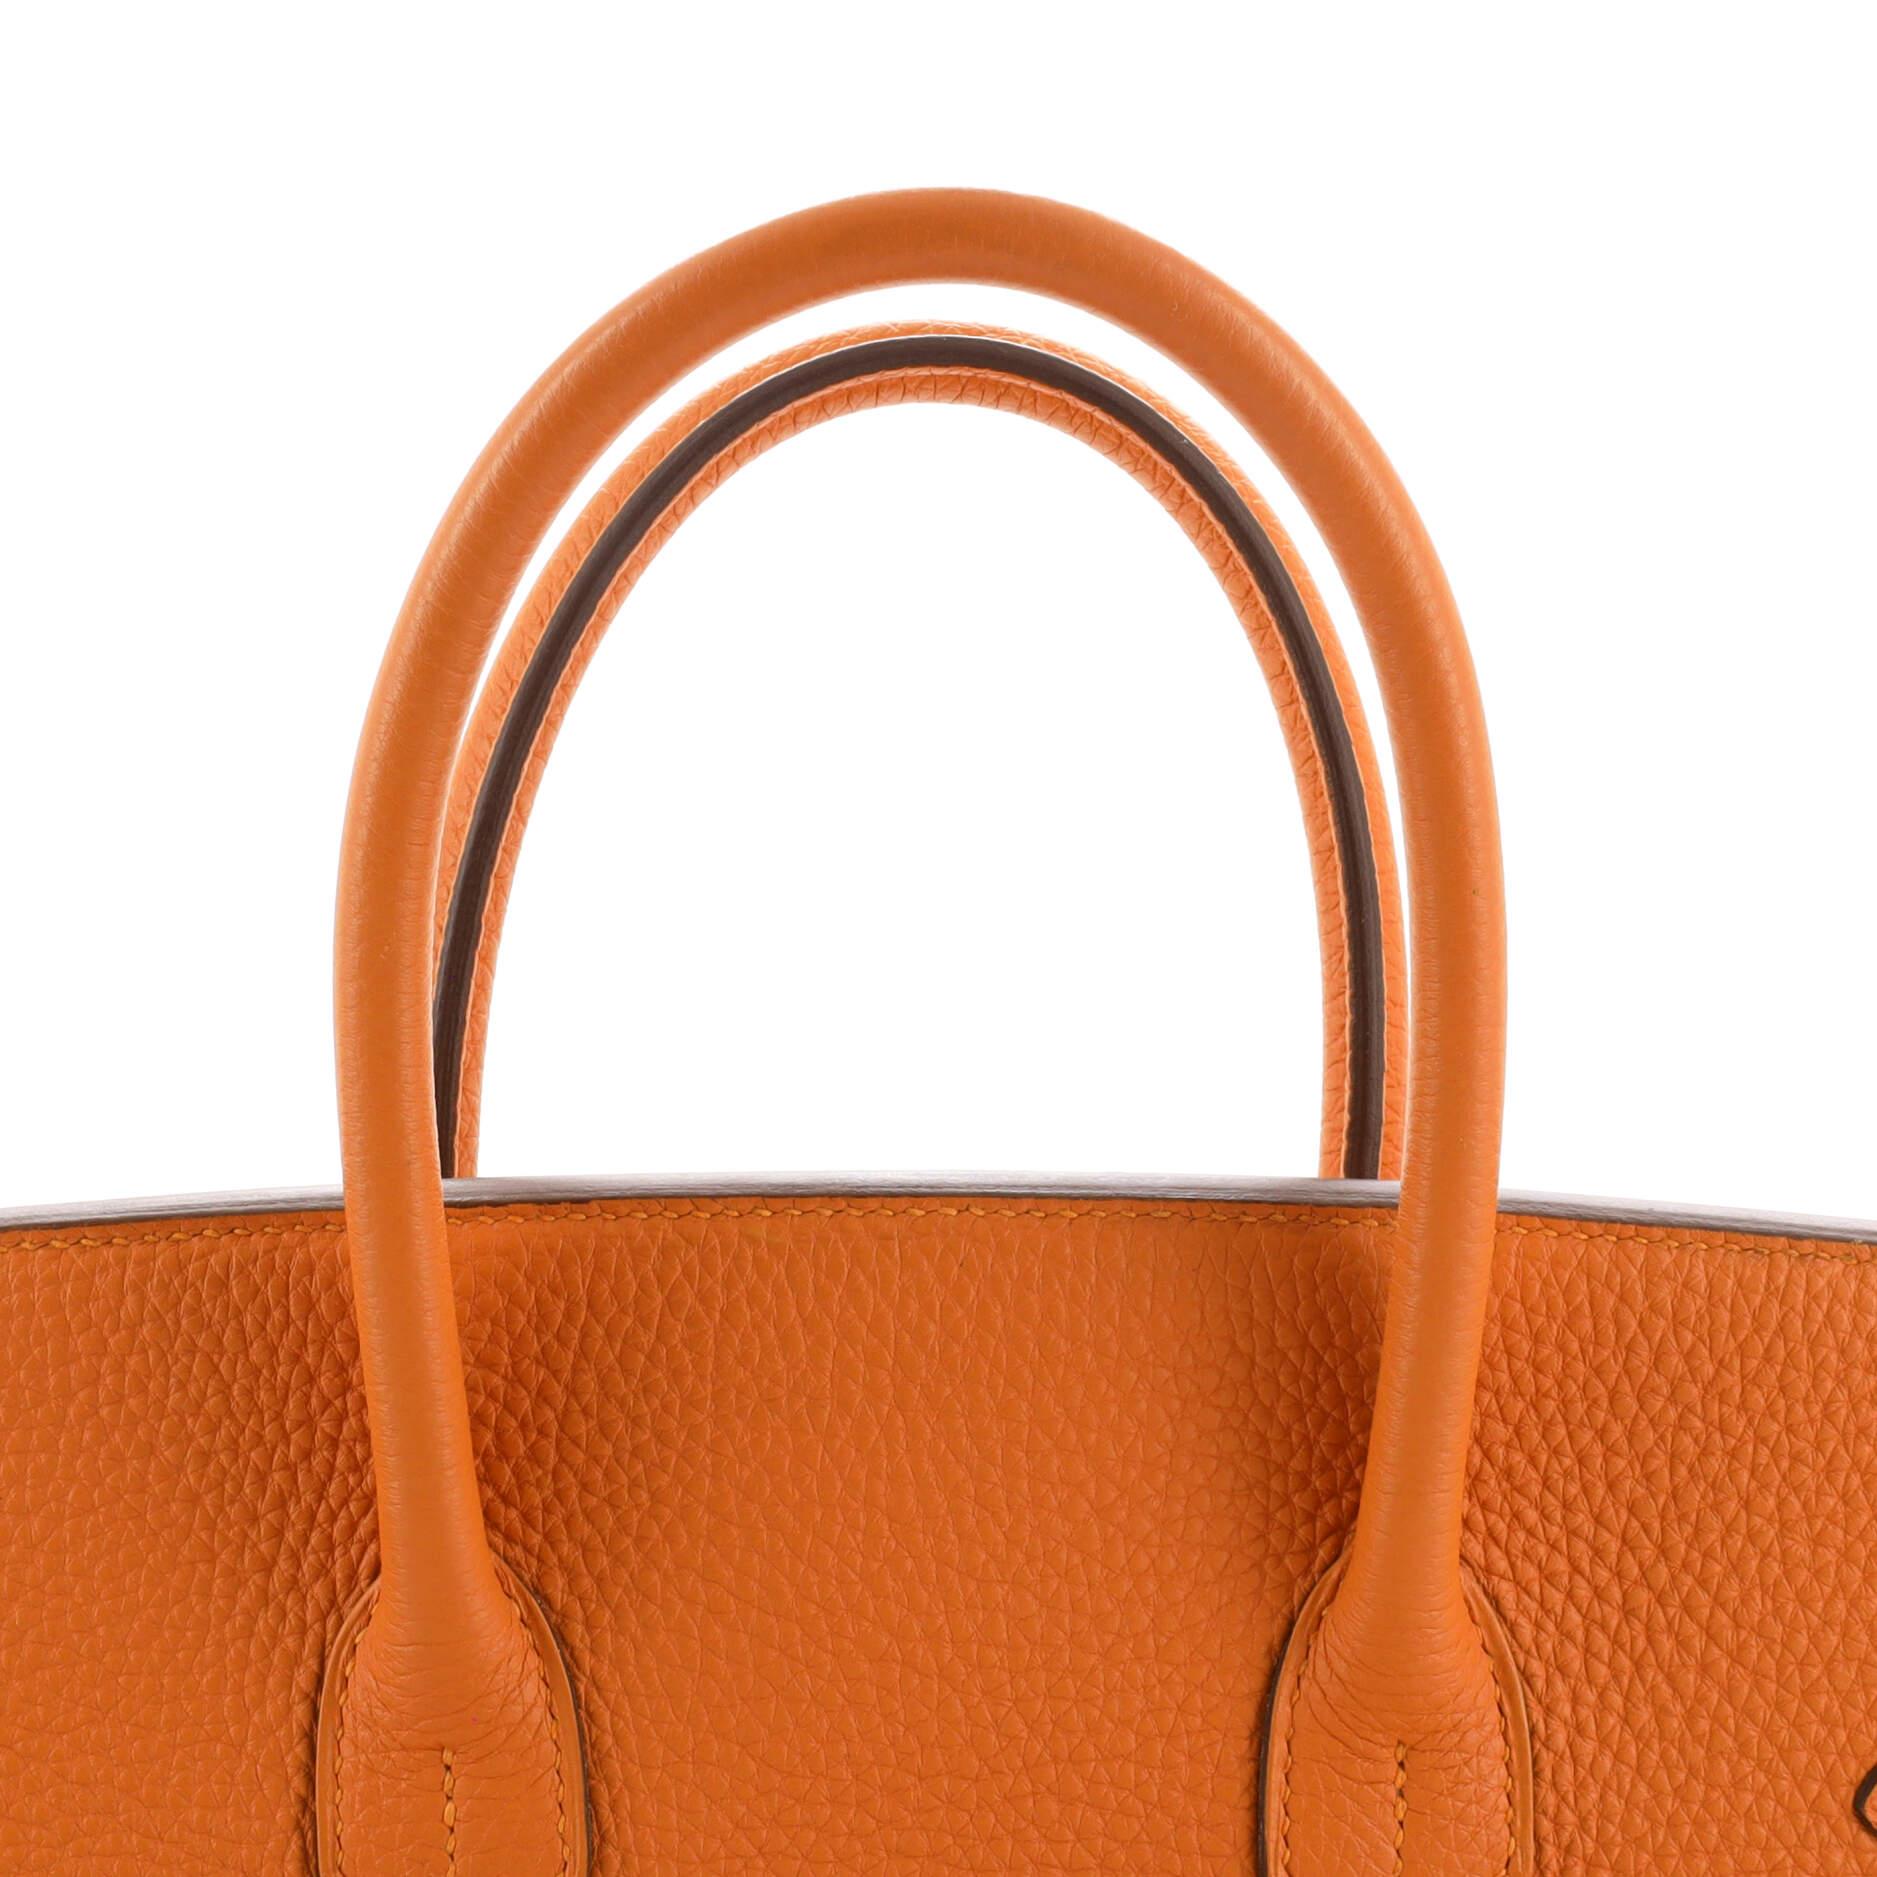 Hermès Sac à main Birkin orange H Togo avec finitions métalliques dorées 35 4